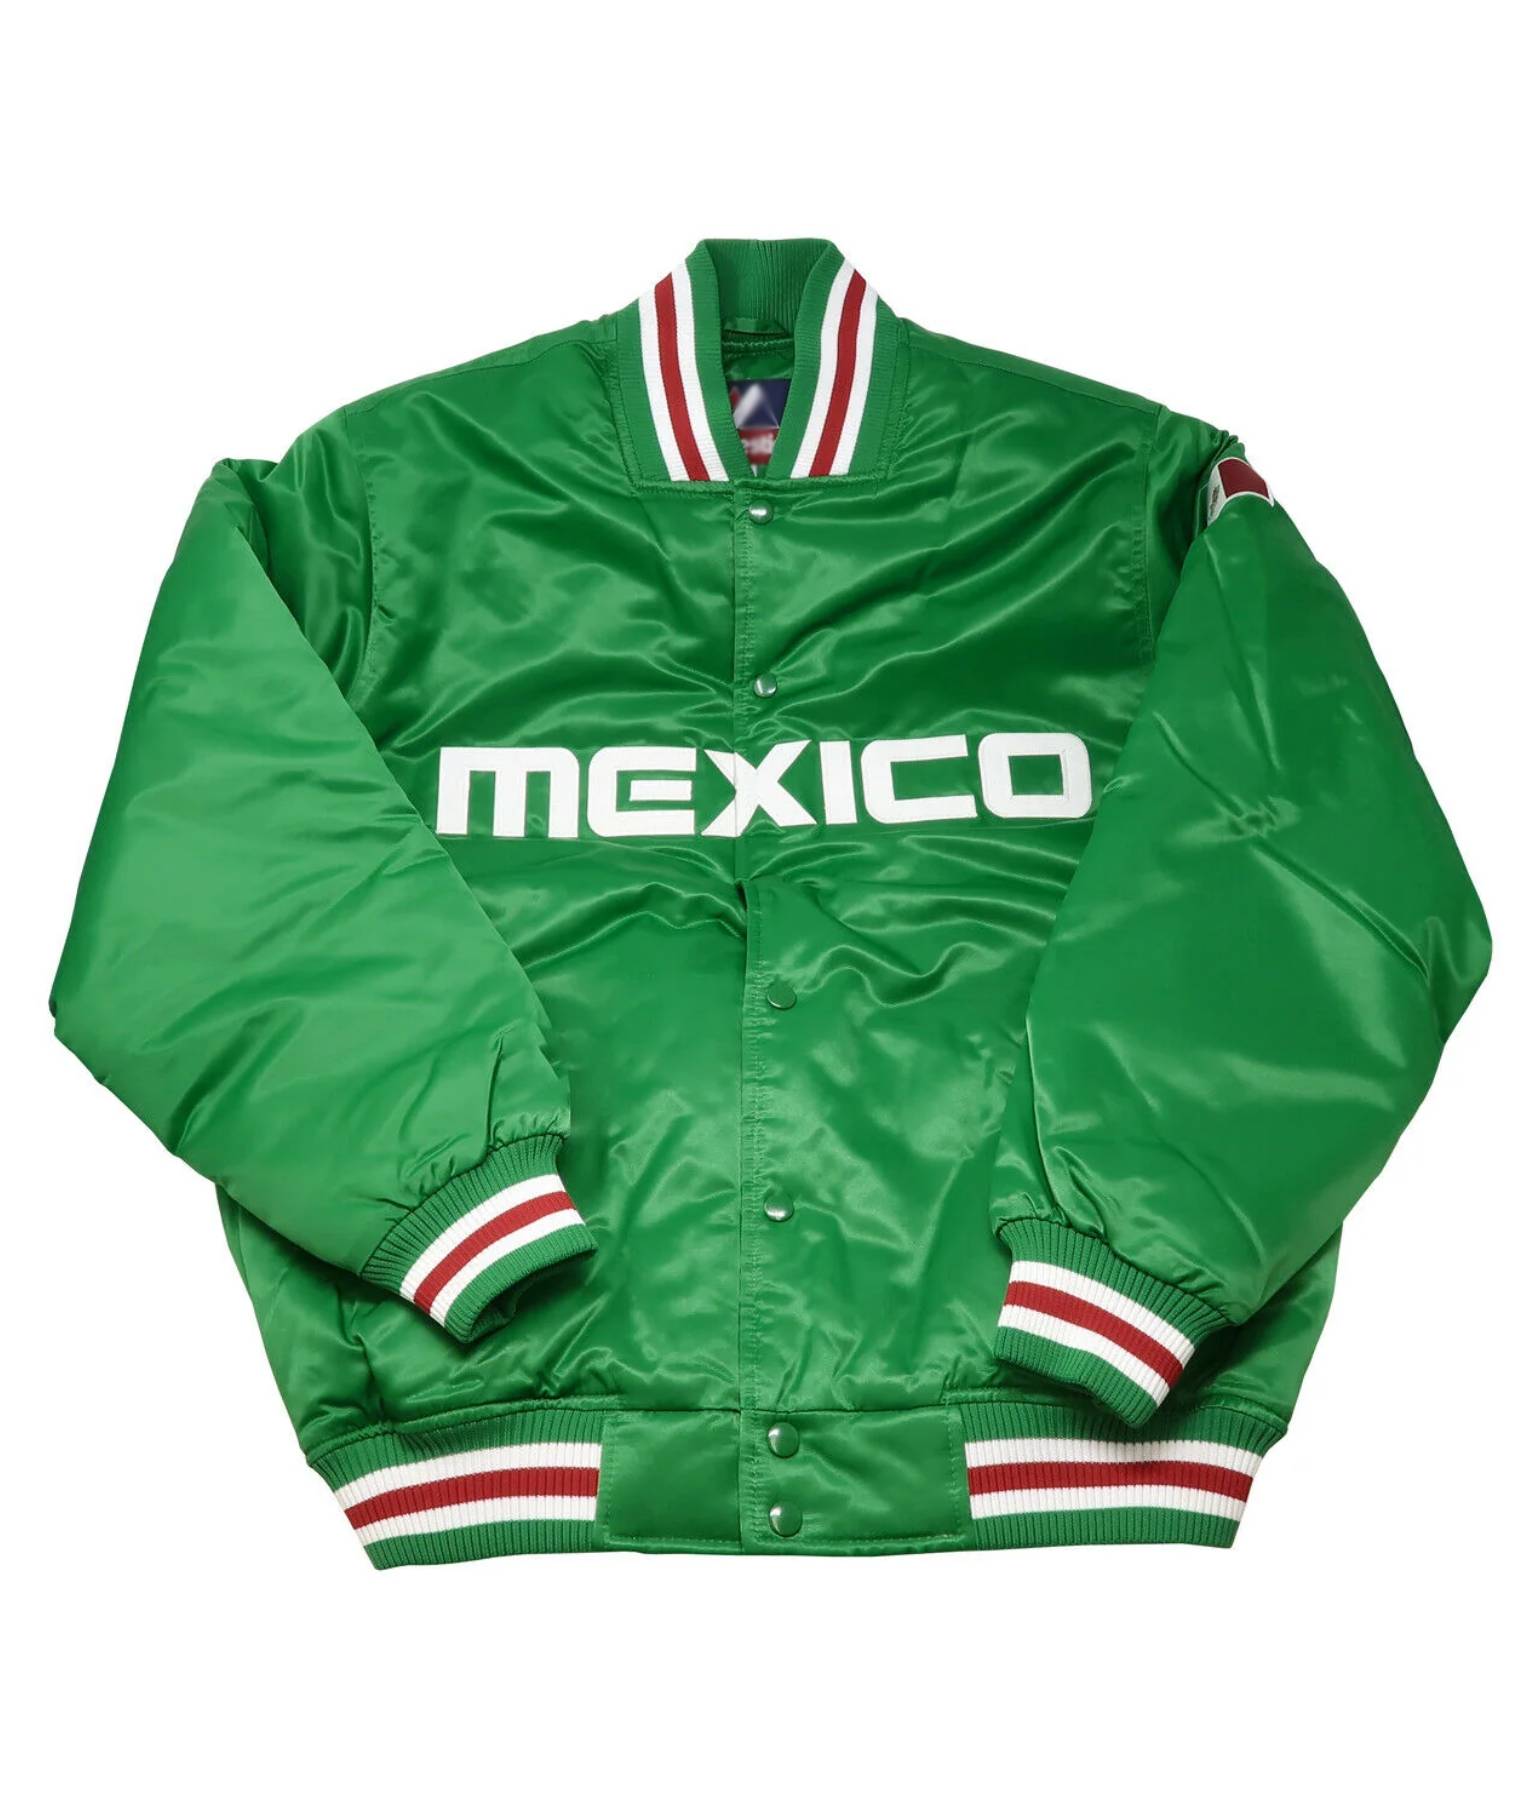 Maxico Green Varsity Jacket (1)